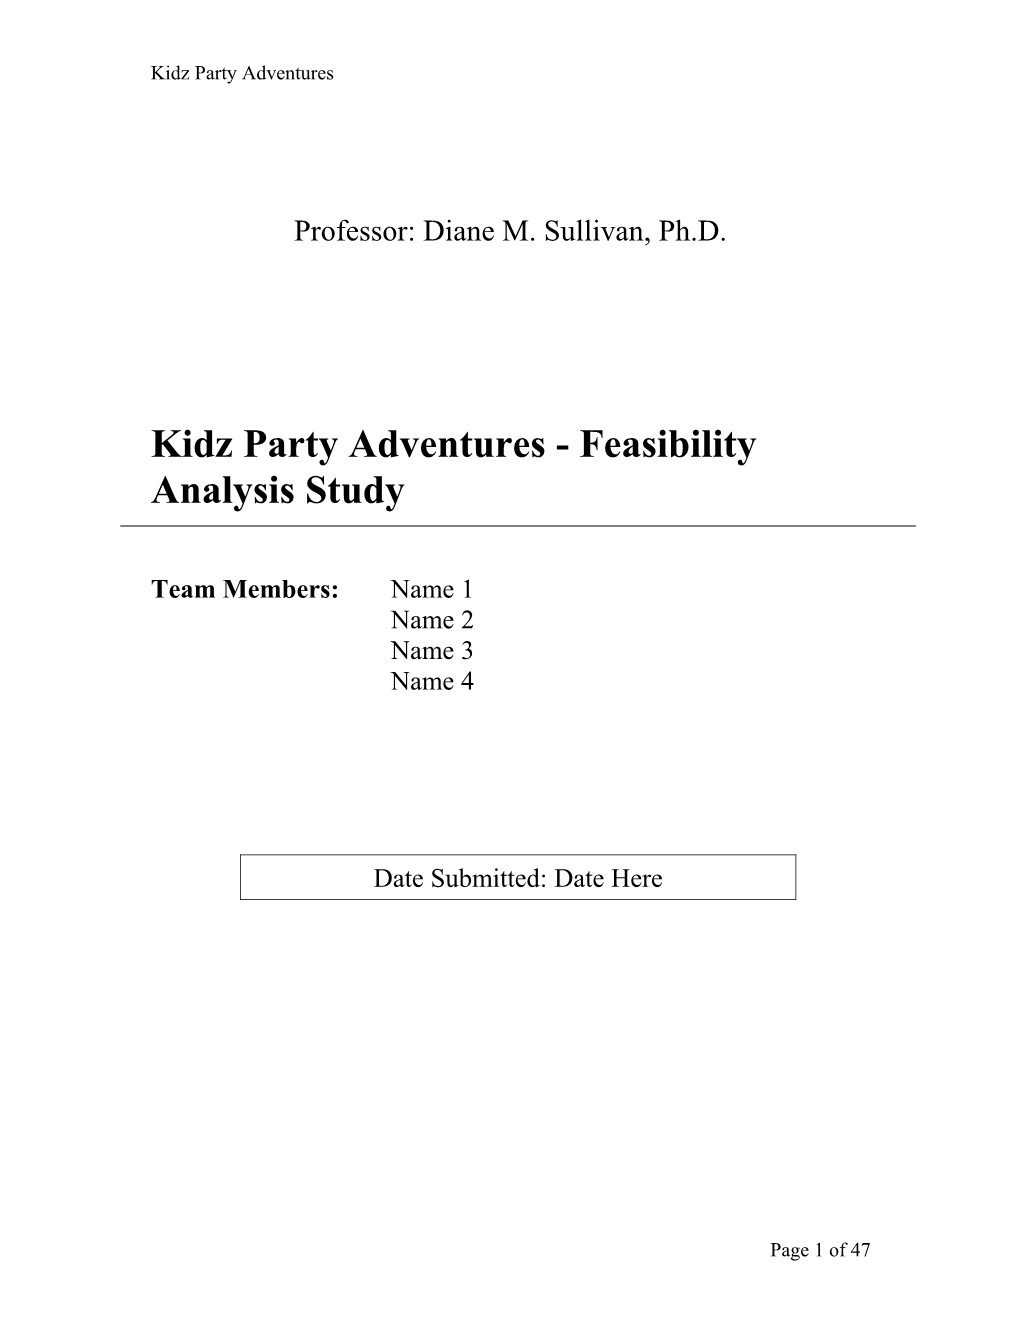 Kidz Party Adventures - Feasibility Analysis Study